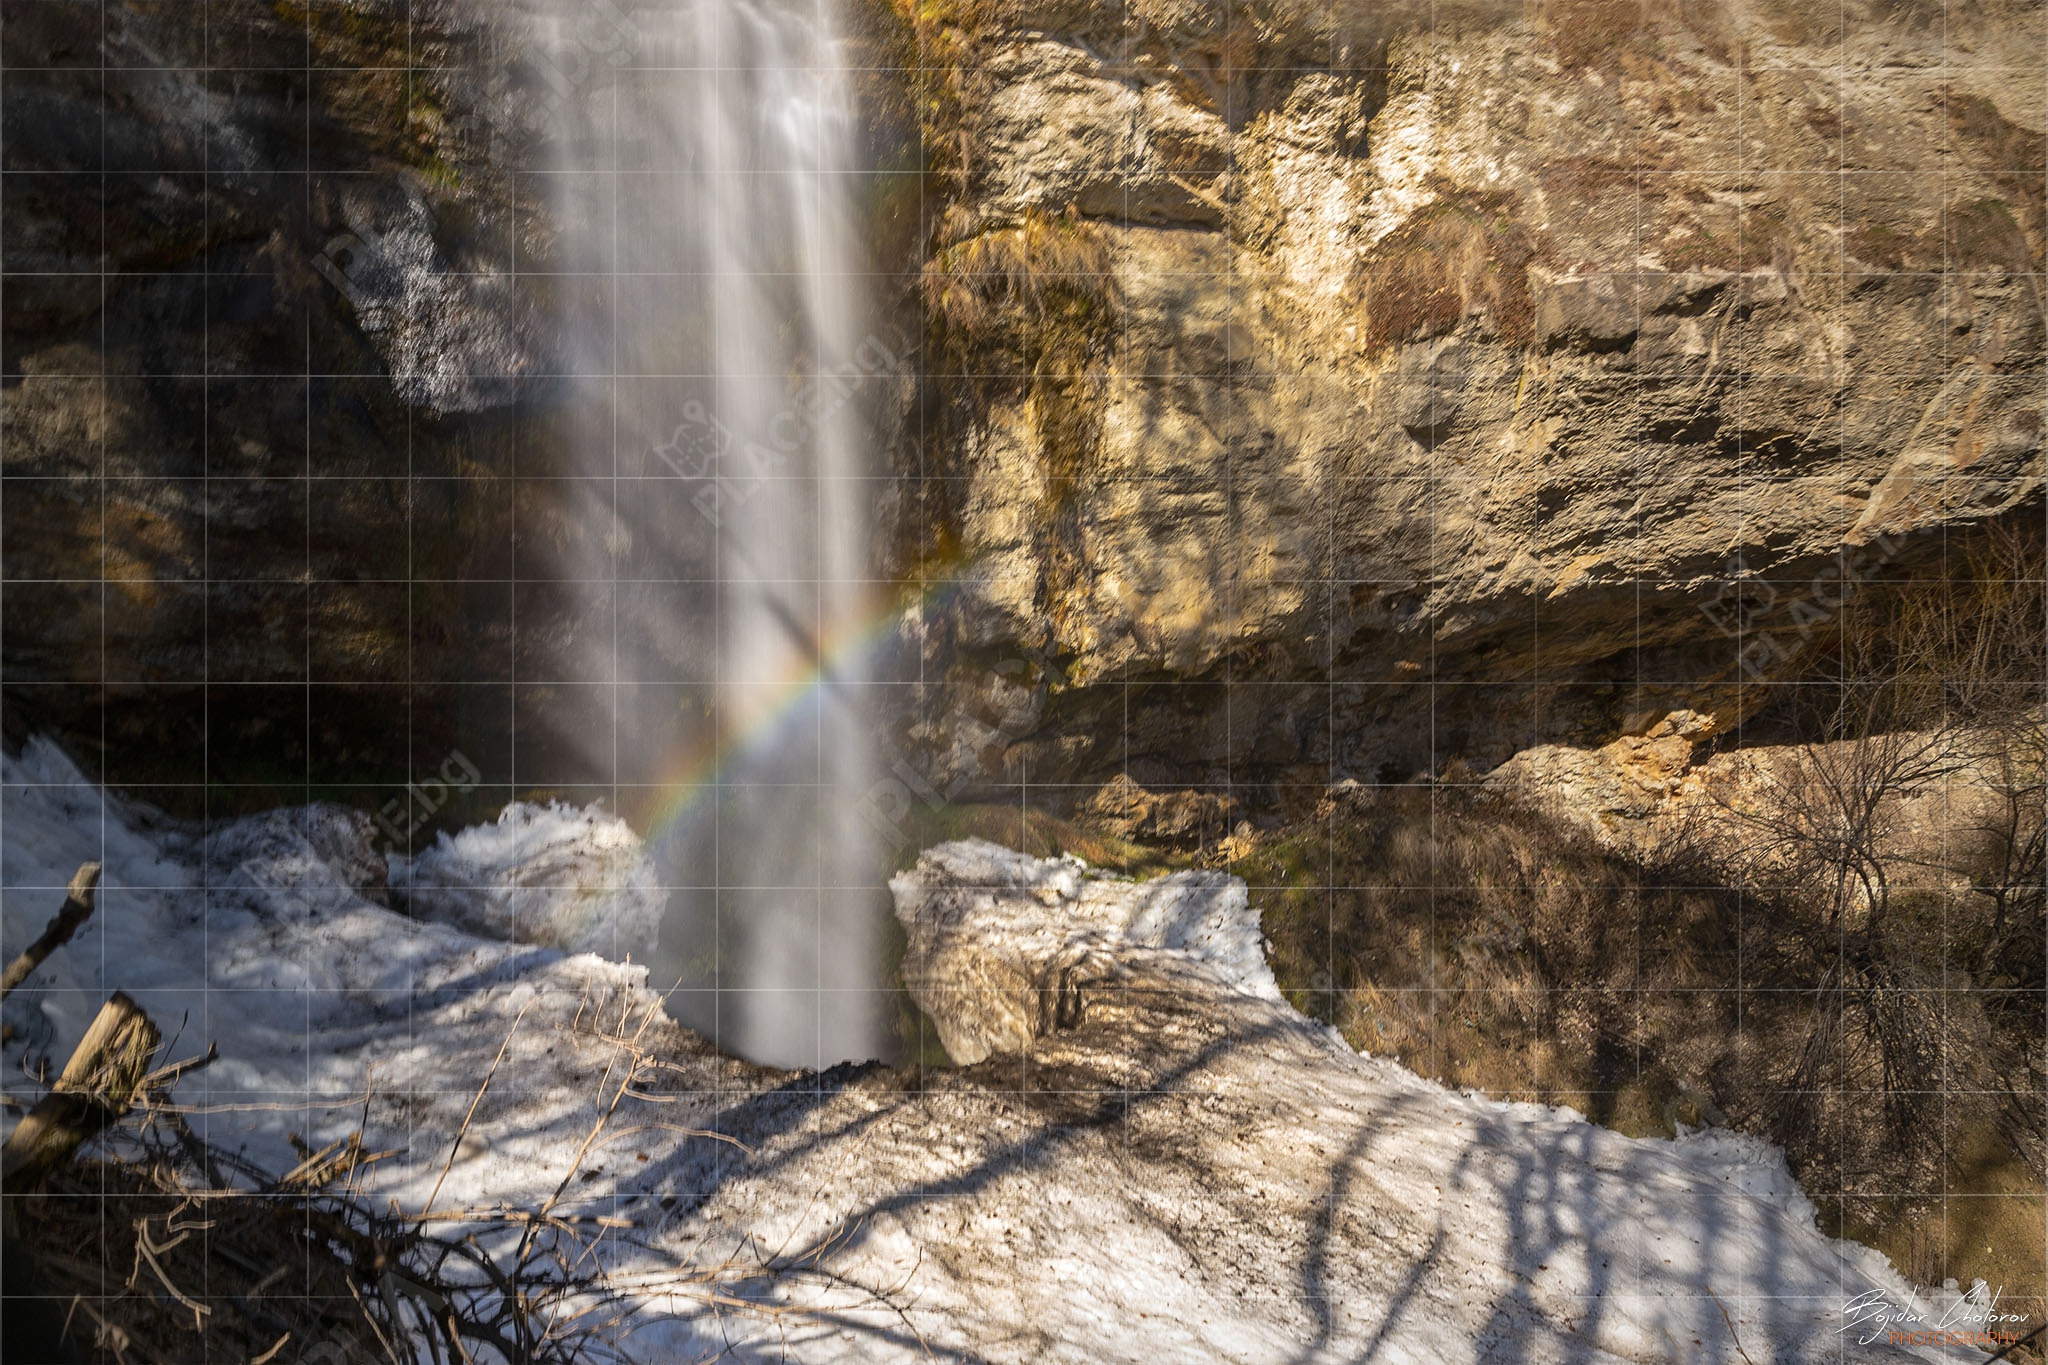 Смолянски водопад – дъга образувана от водните пръски (BCH_3746)